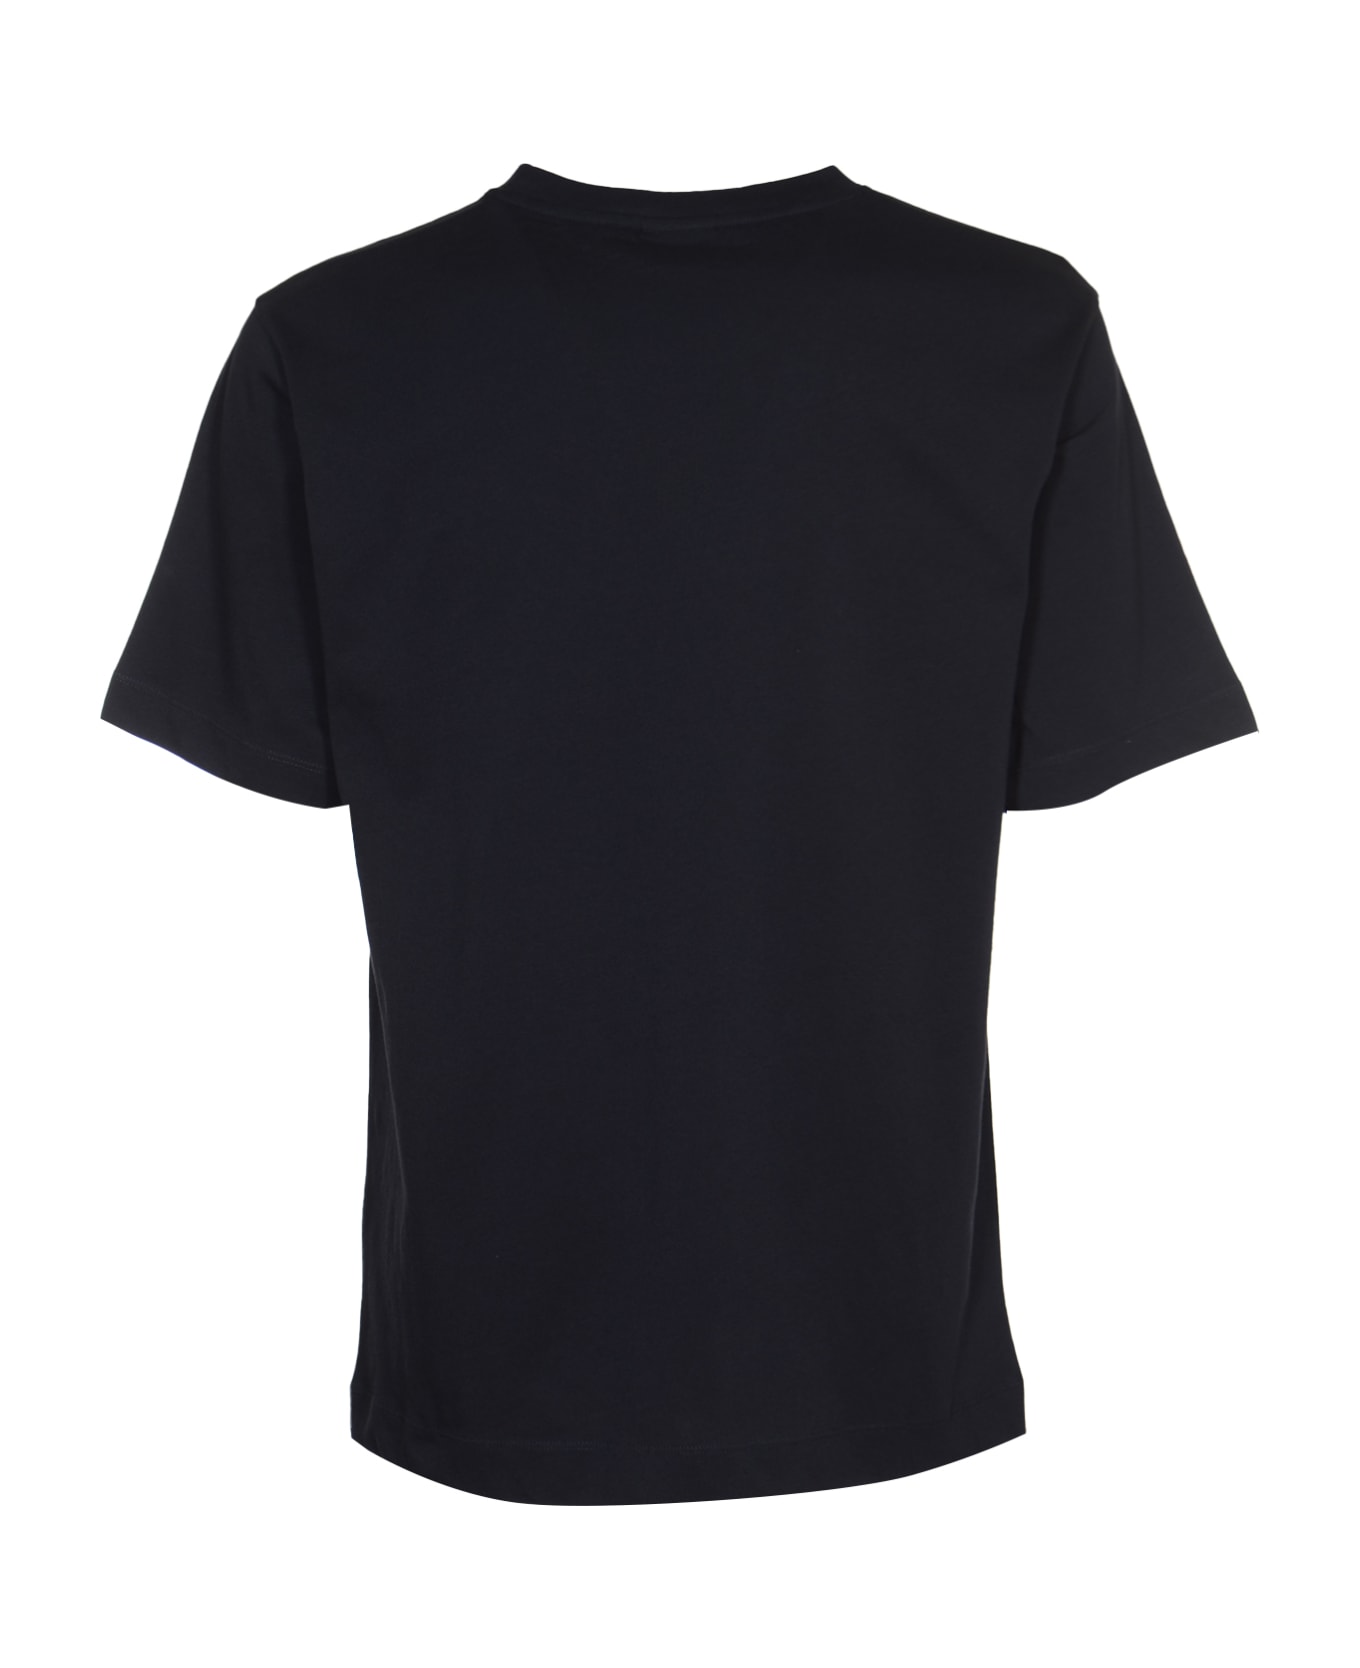 Dries Van Noten Hertz T-shirt - Navy